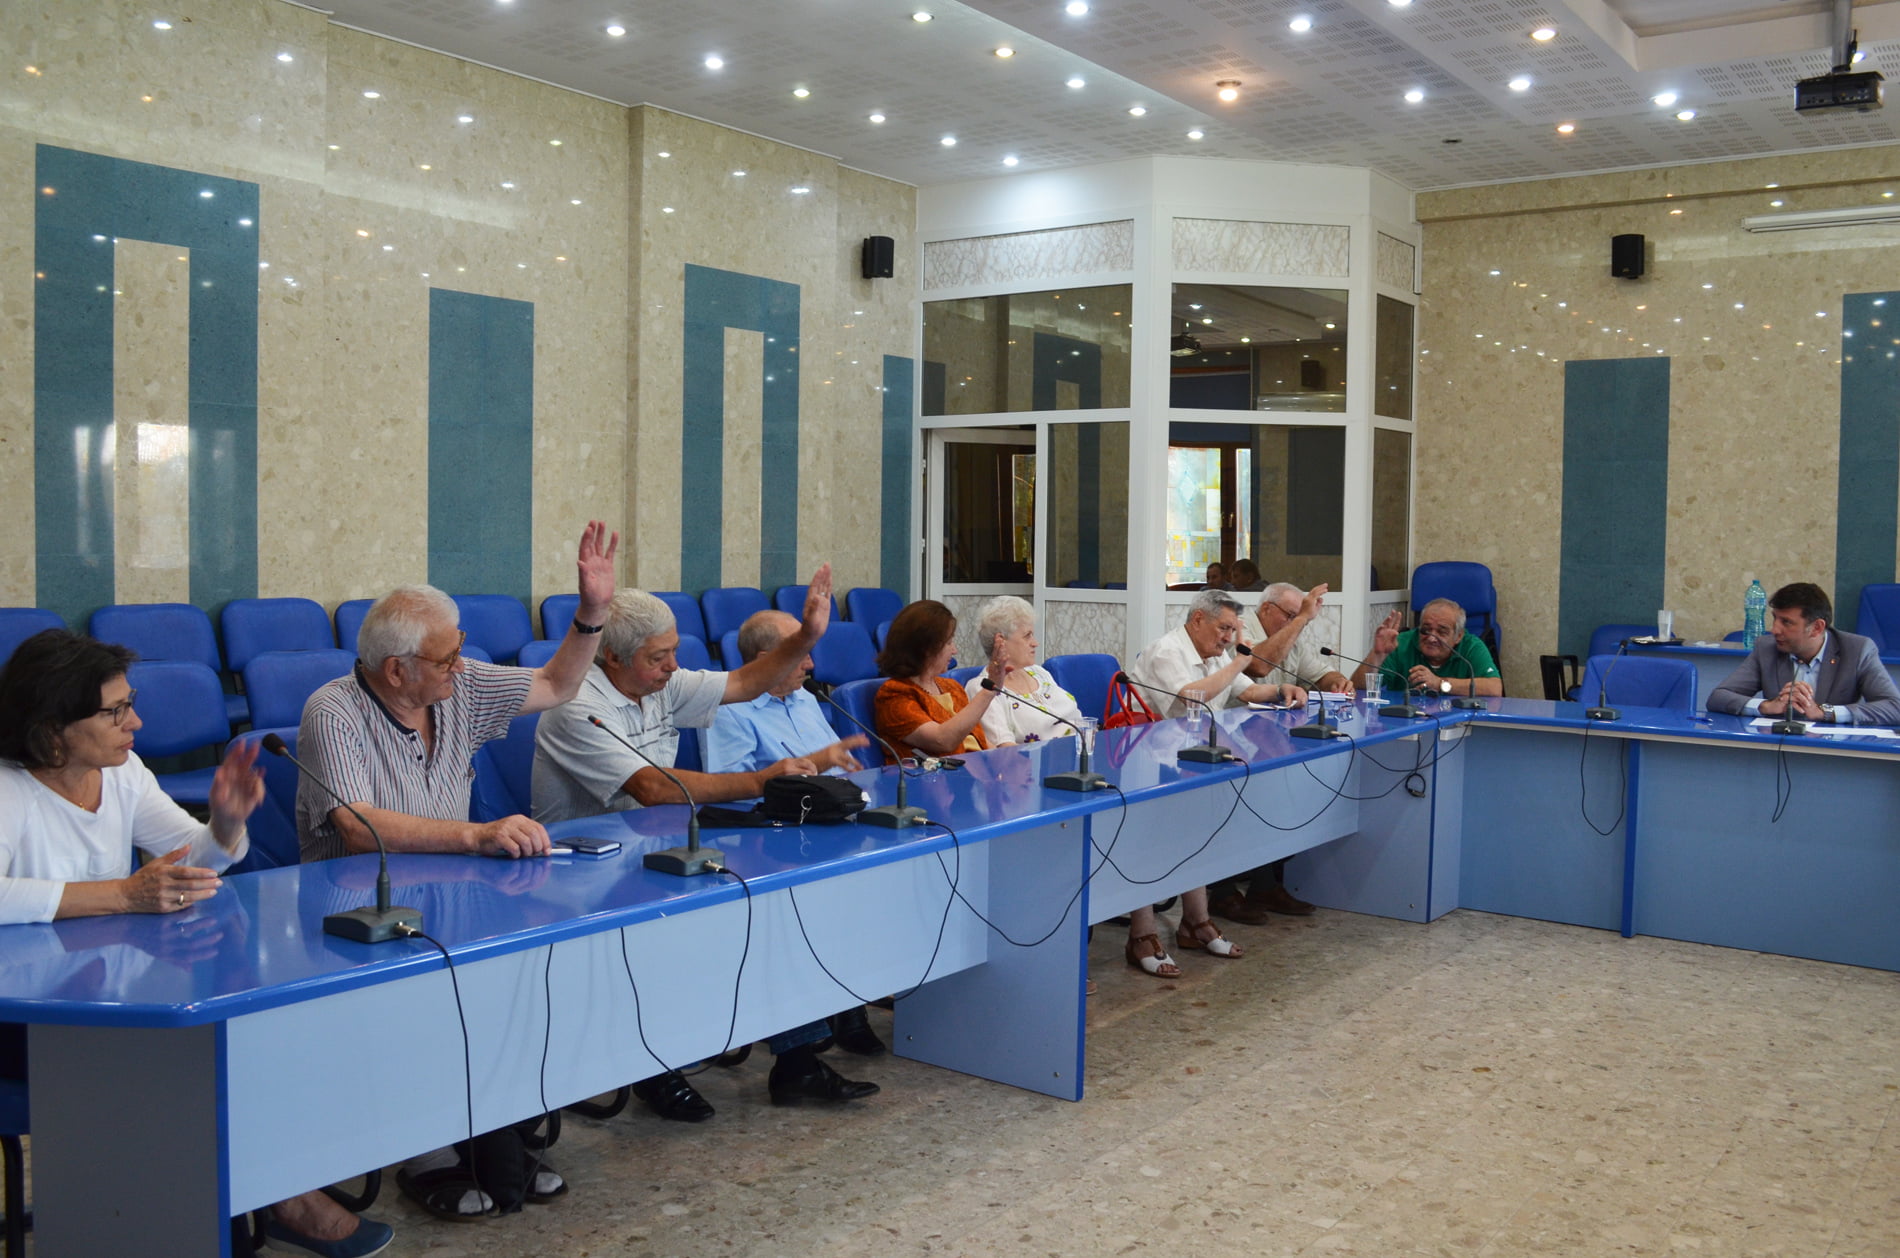 Au fost aleși membrii Consiliului Seniorilor de la nivelul municipiului Roman